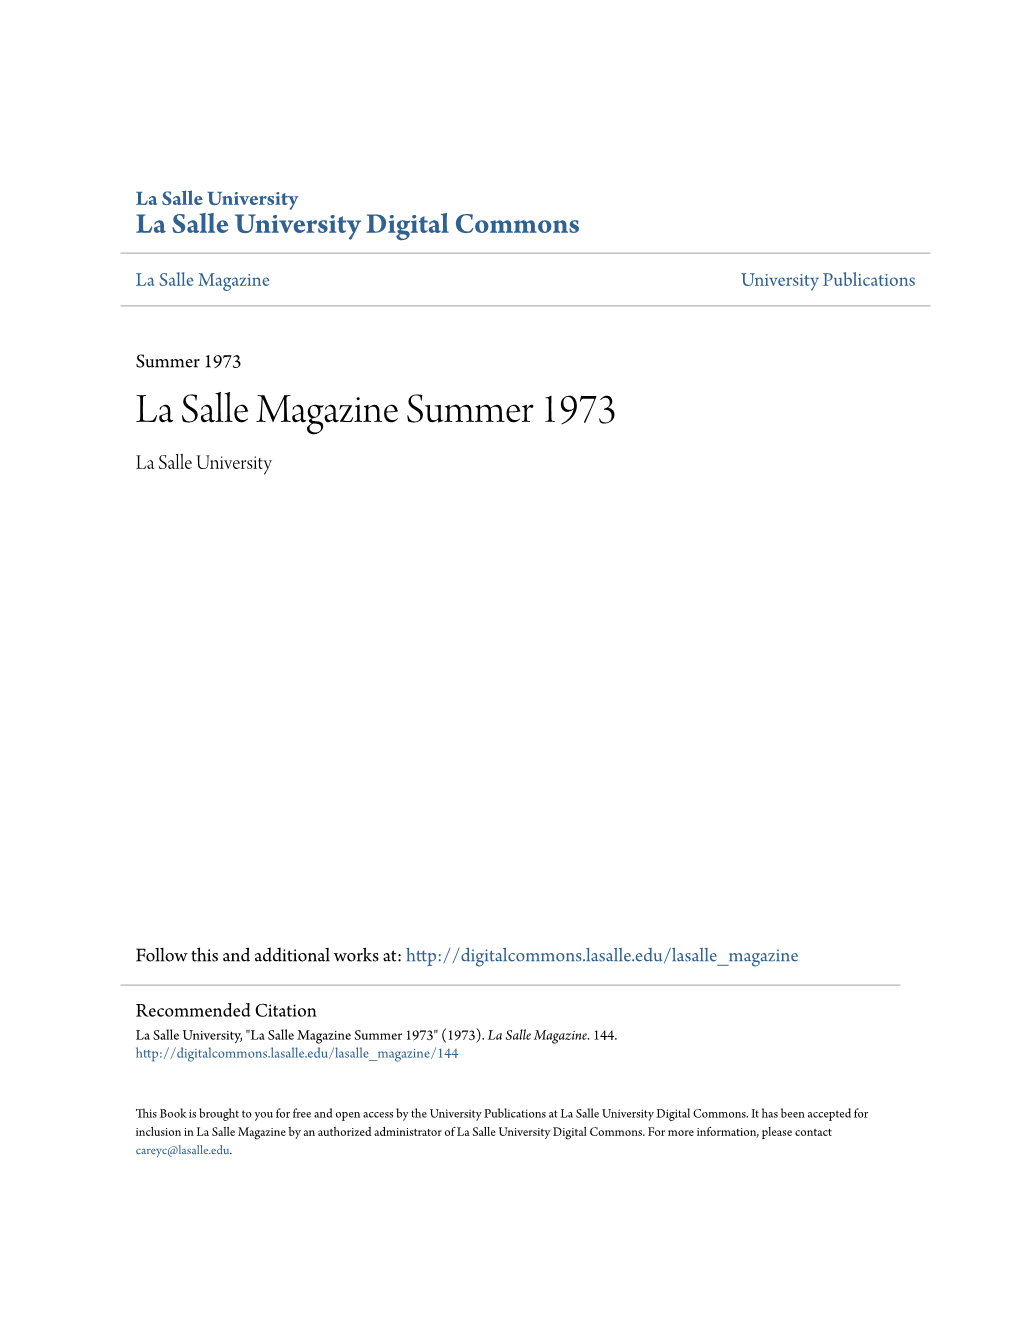 La Salle Magazine Summer 1973 La Salle University